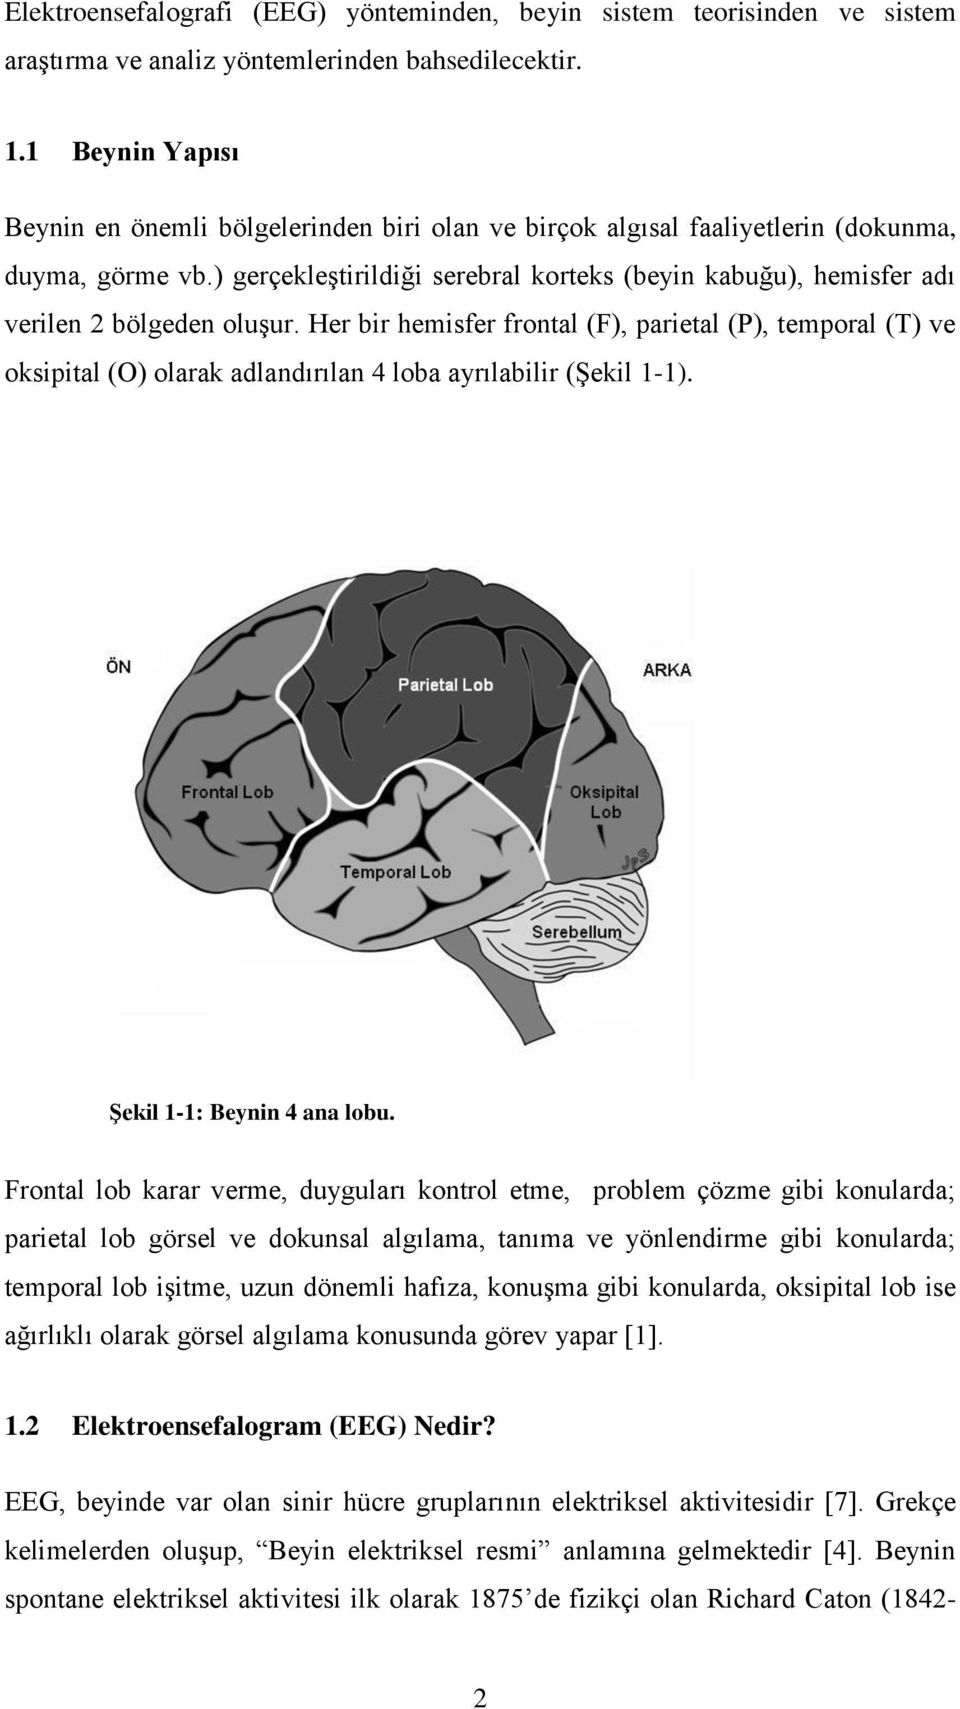 ) gerçekleştirildiği serebral korteks (beyin kabuğu), hemisfer adı verilen 2 bölgeden oluşur.